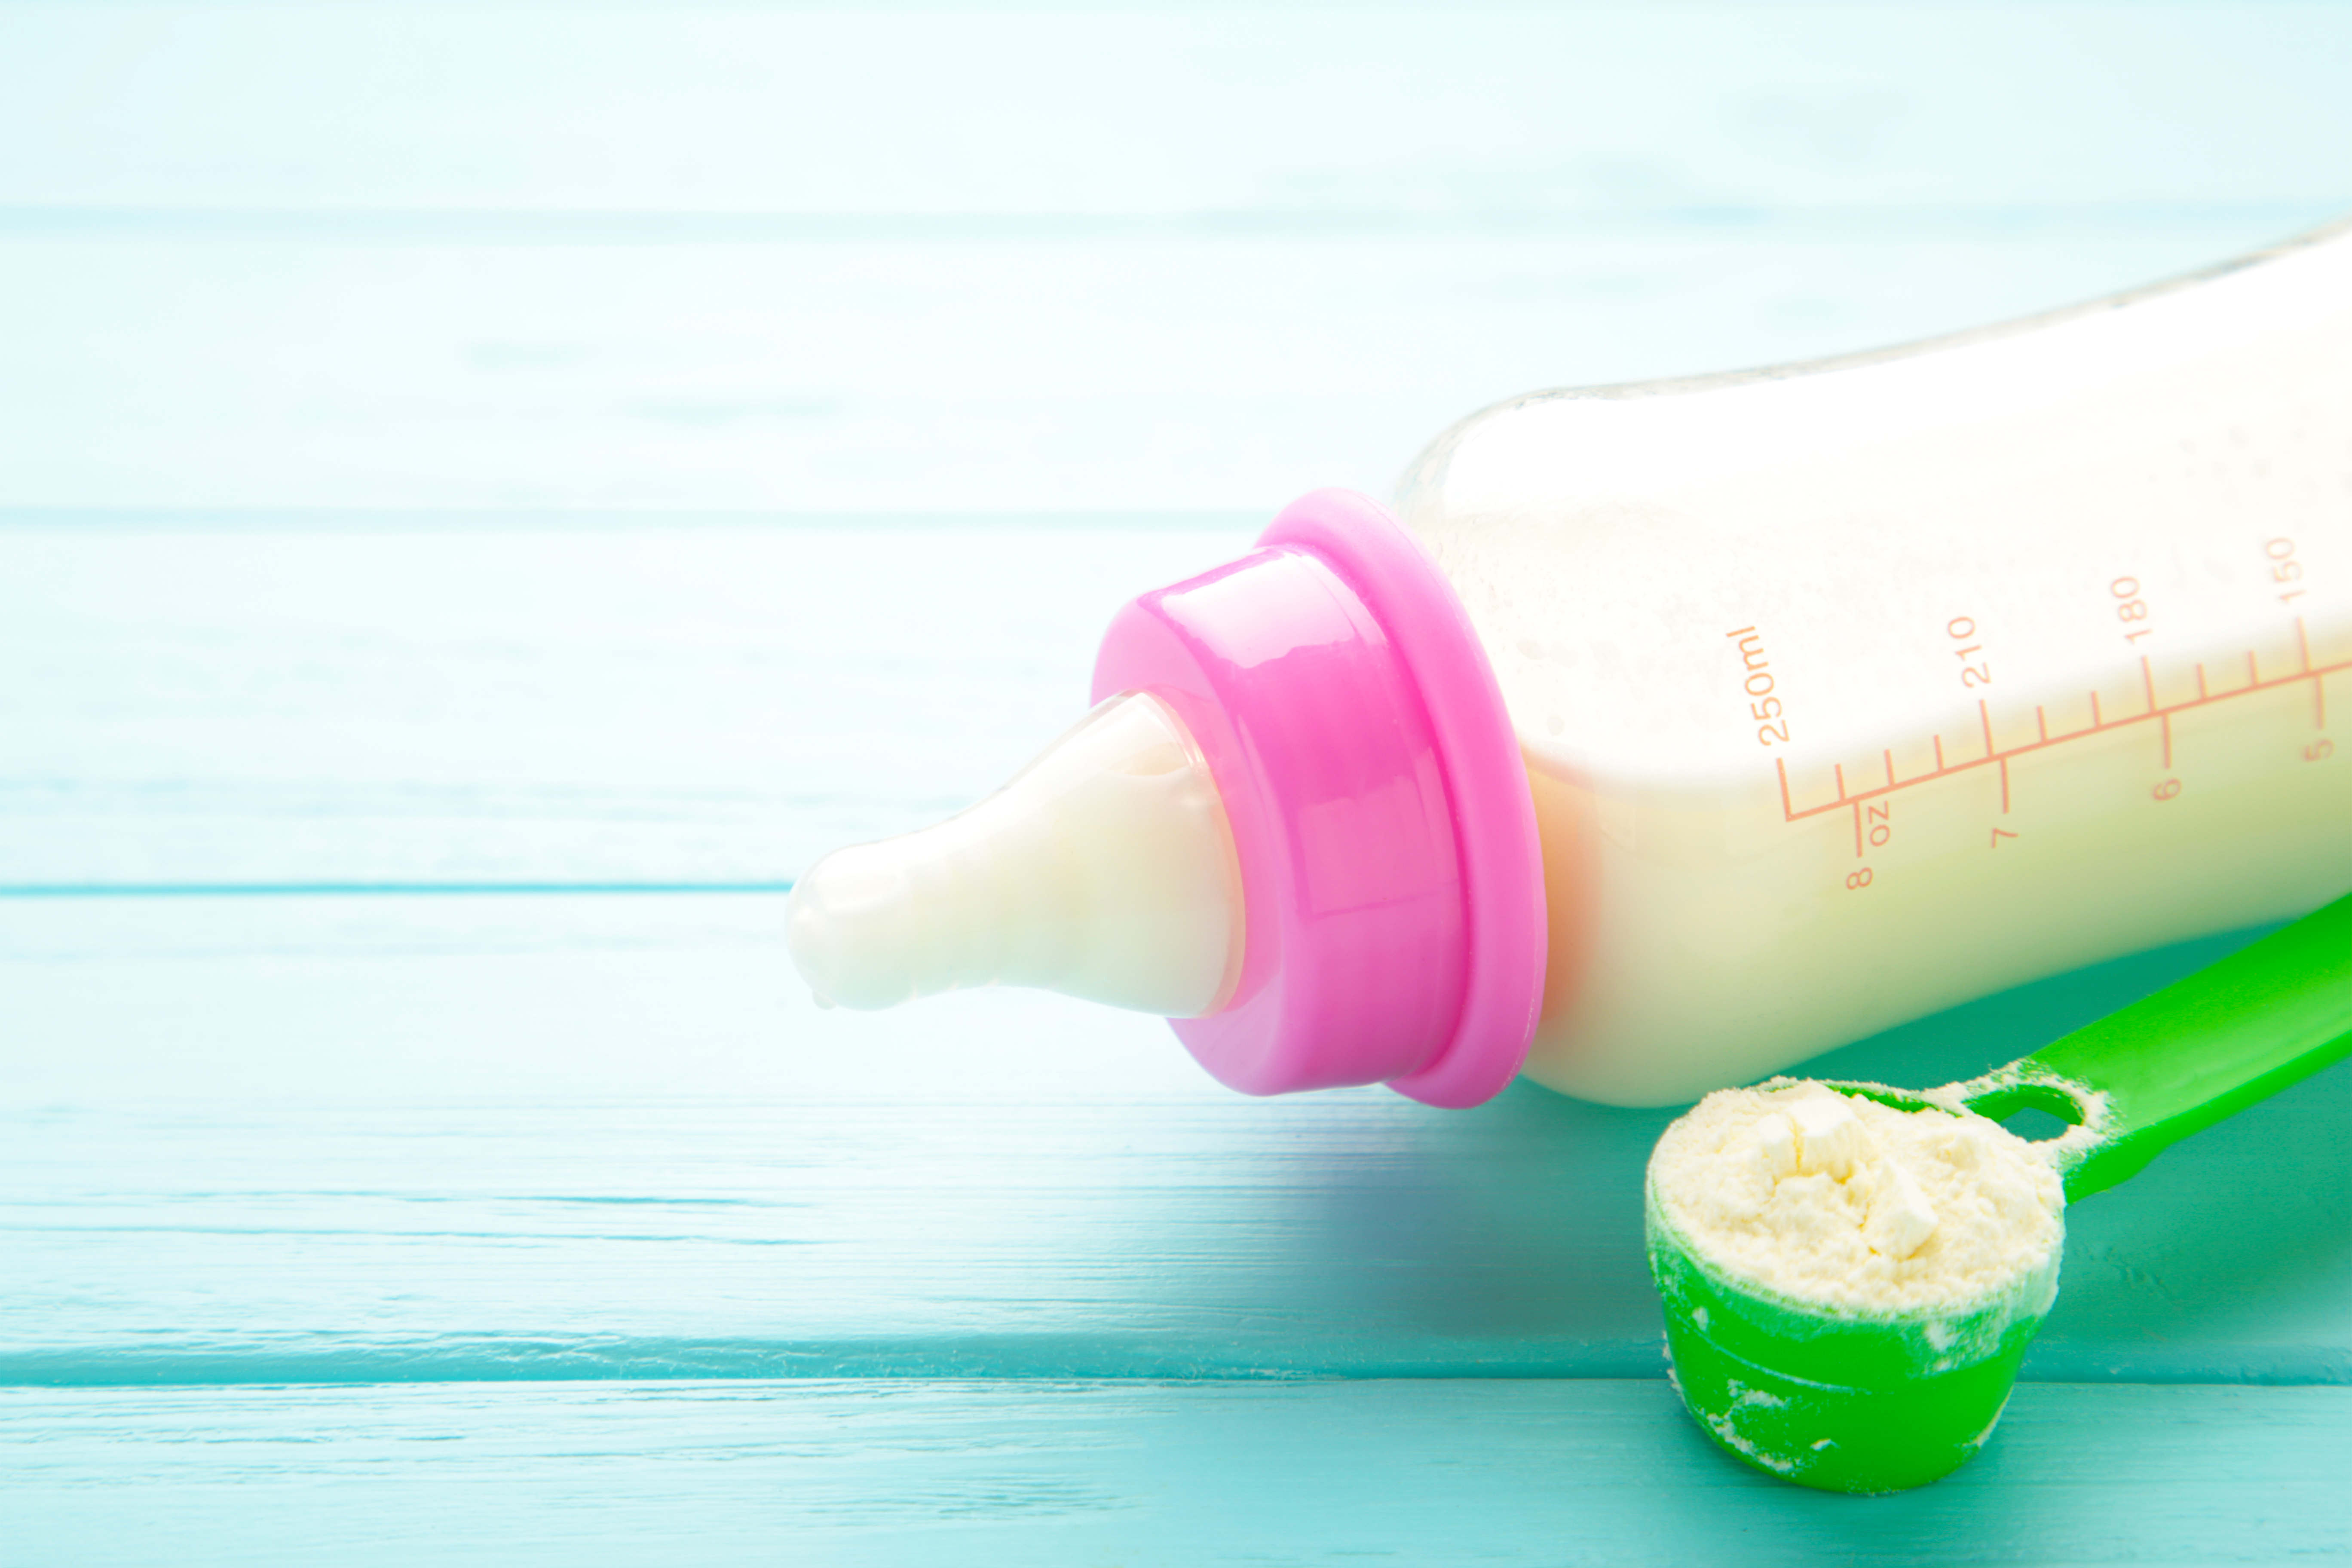 स्तनपानबाट वञ्चित बालबालिका विष सरहको बट्टाको दूध खाँदै